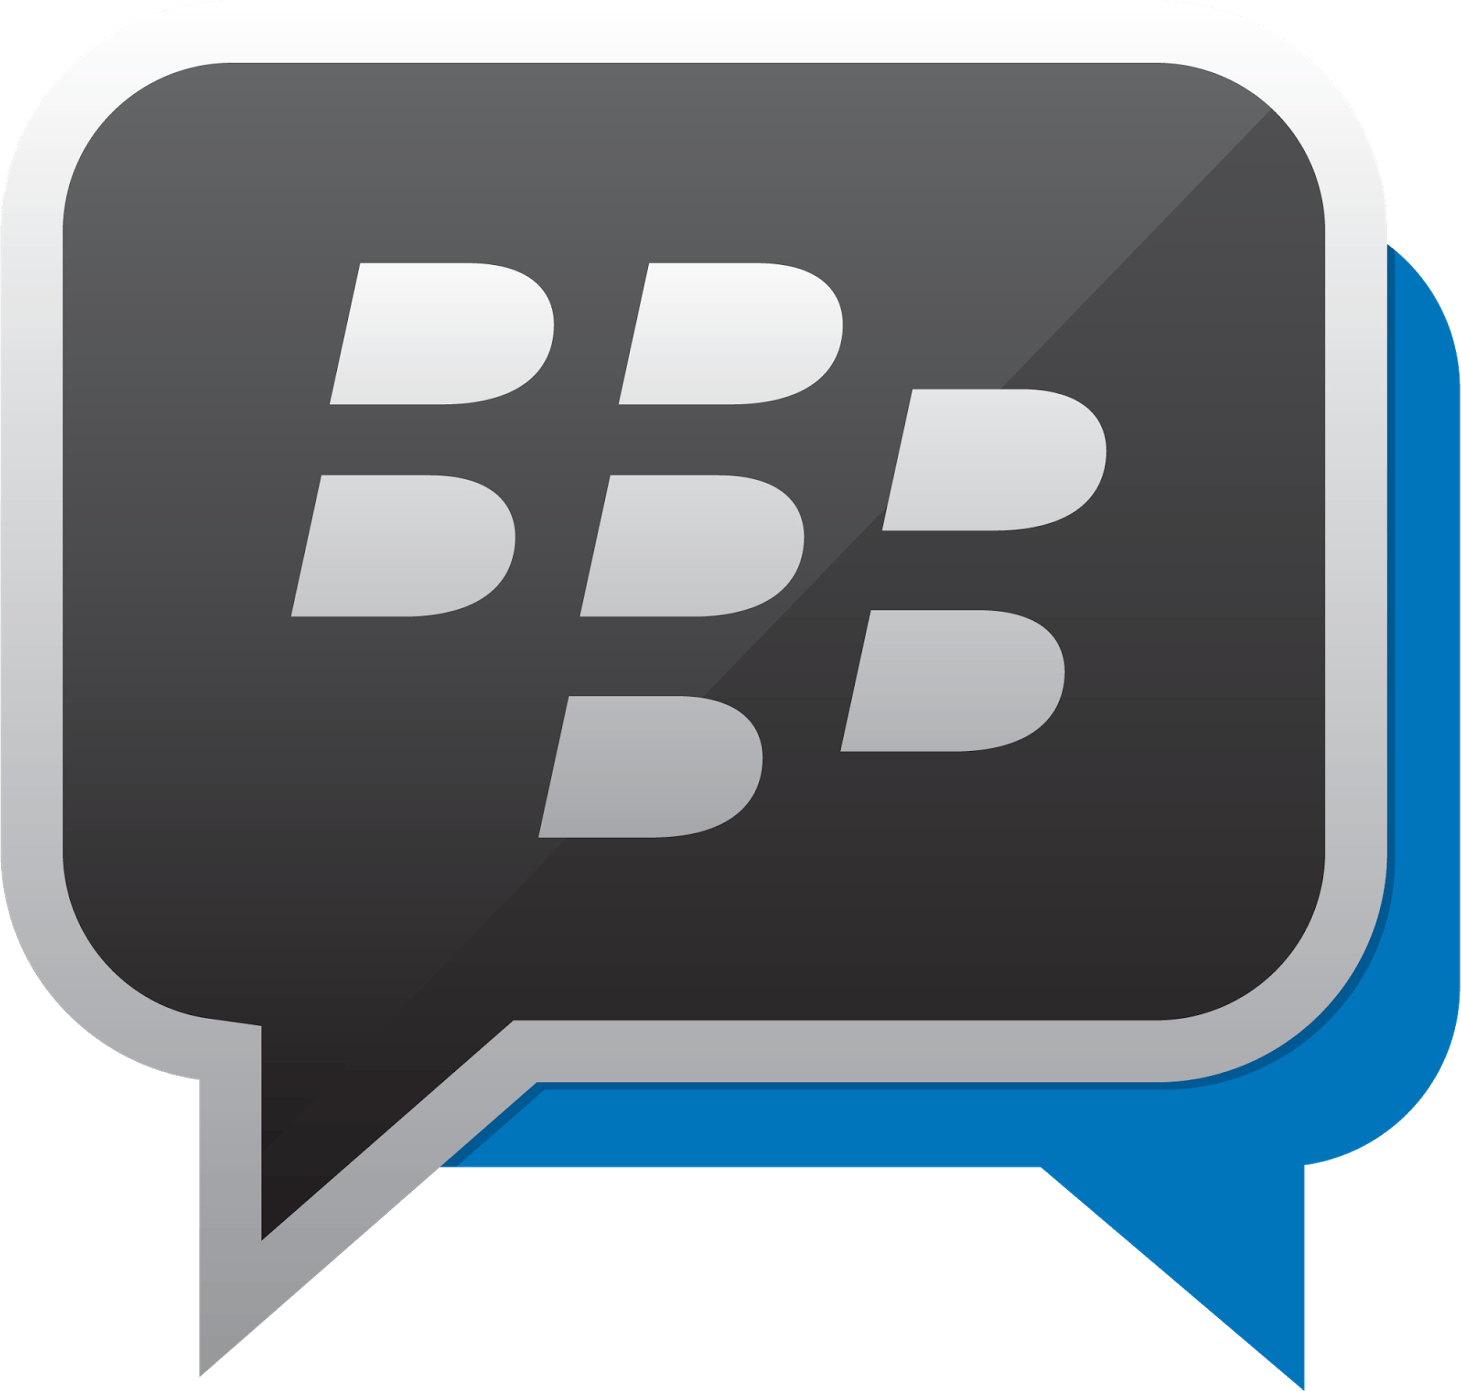 Google Messenger Logo - File:Blackberry-Messenger-Logo.png - Wikimedia Commons